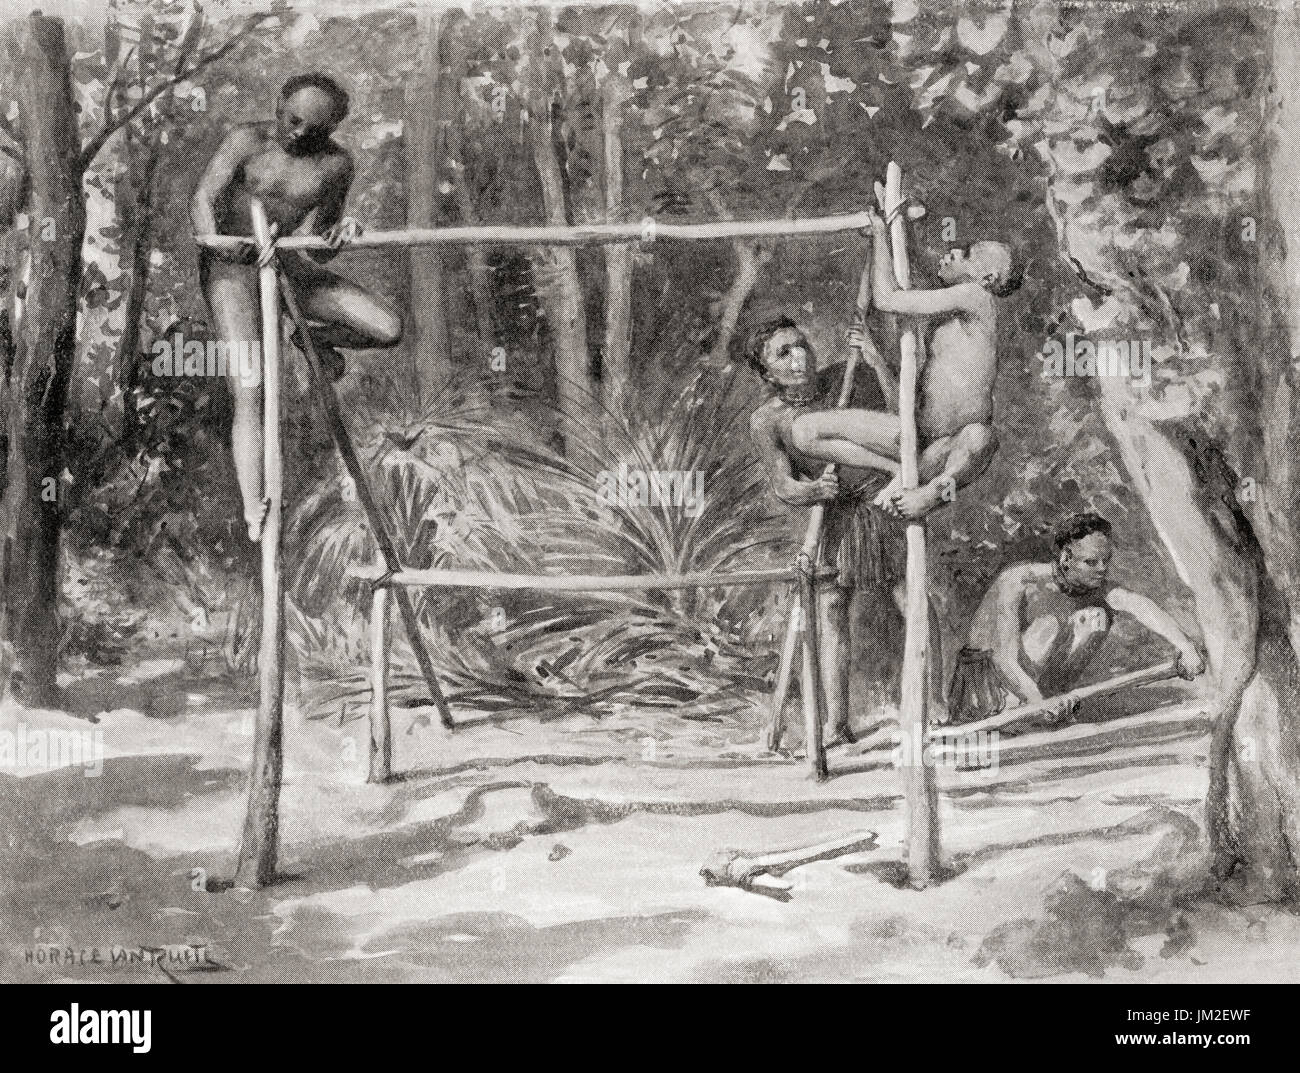 Primi nativi indiani costruire un riparo legando insieme i pali e copertura con foglie. Da Hutchinson nella storia delle nazioni, pubblicato 1915. Foto Stock